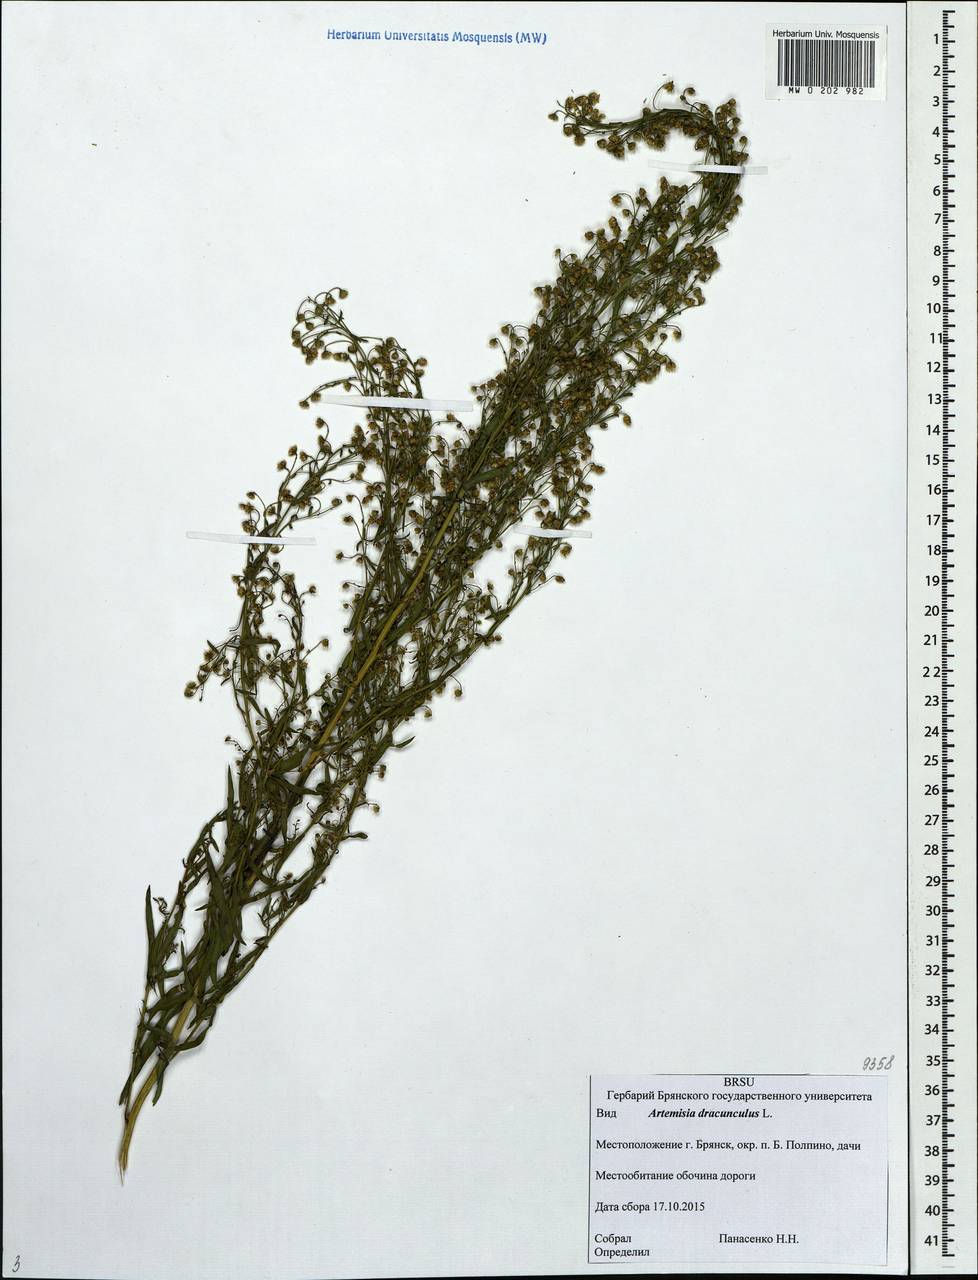 Artemisia dracunculus L., Eastern Europe, Western region (E3) (Russia)